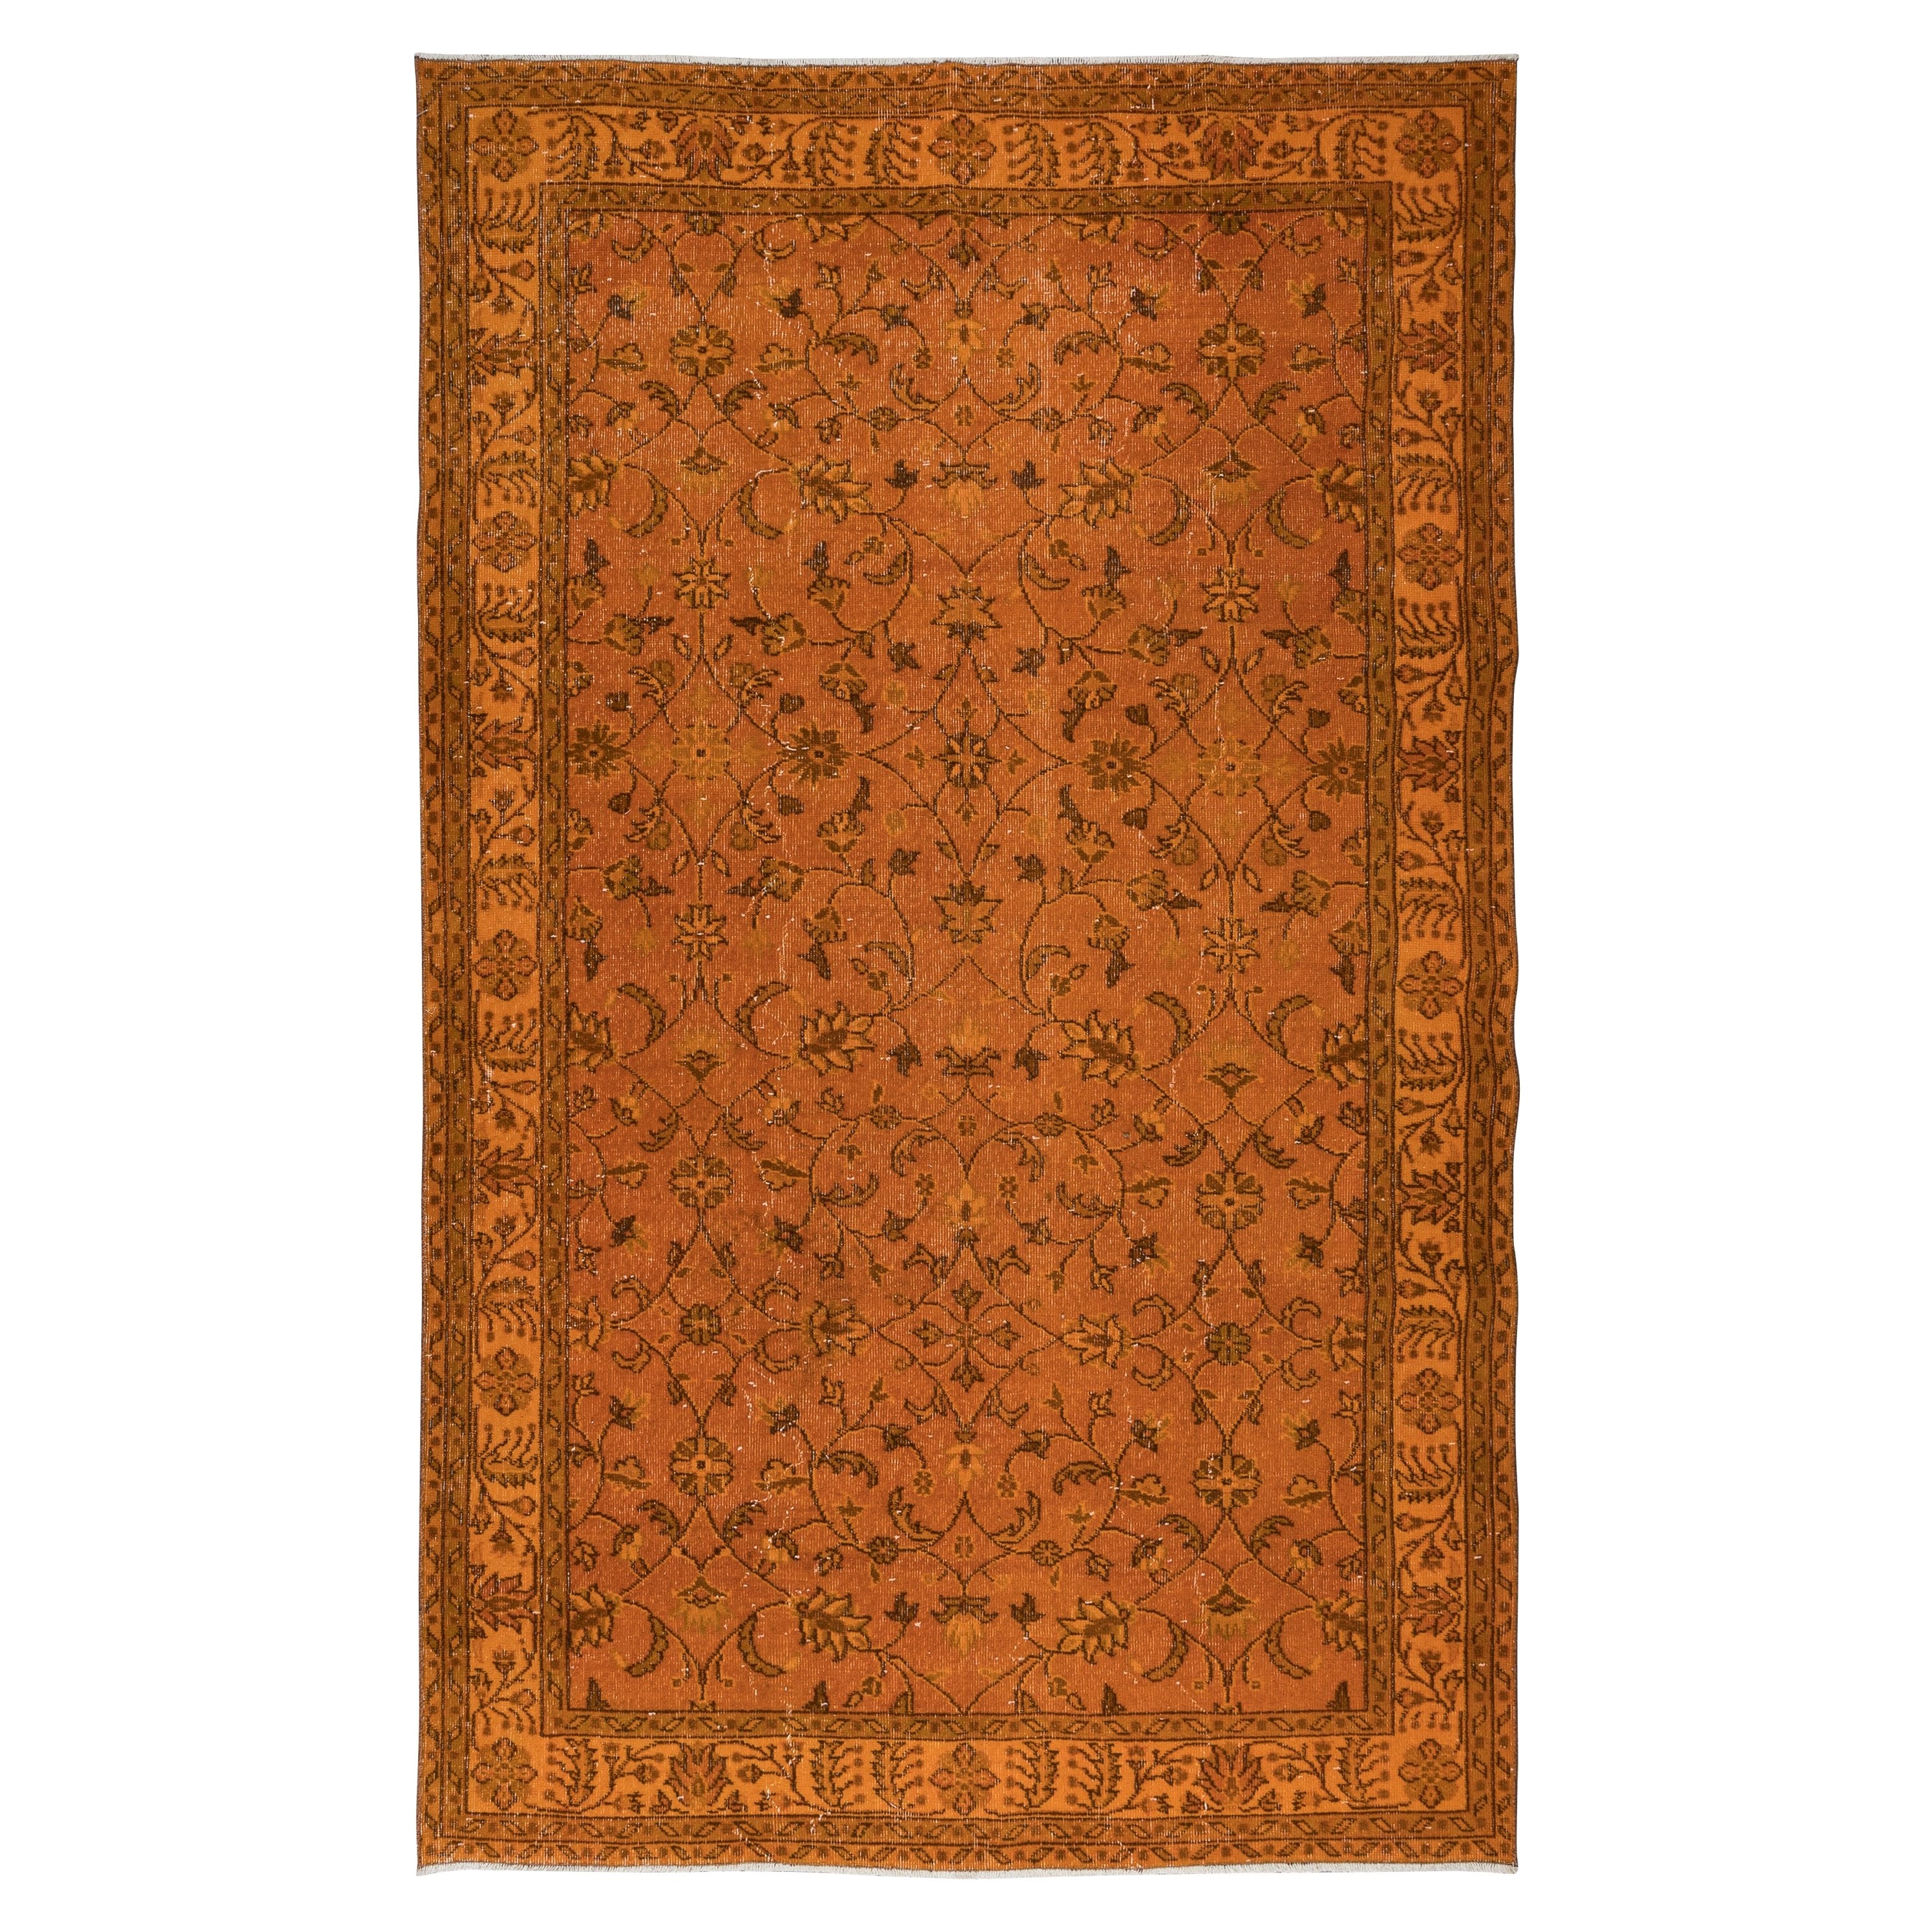 6x9.8 Ft Hand-Made Turkish Area Rug in Orange, Modern Floral Design Carpet